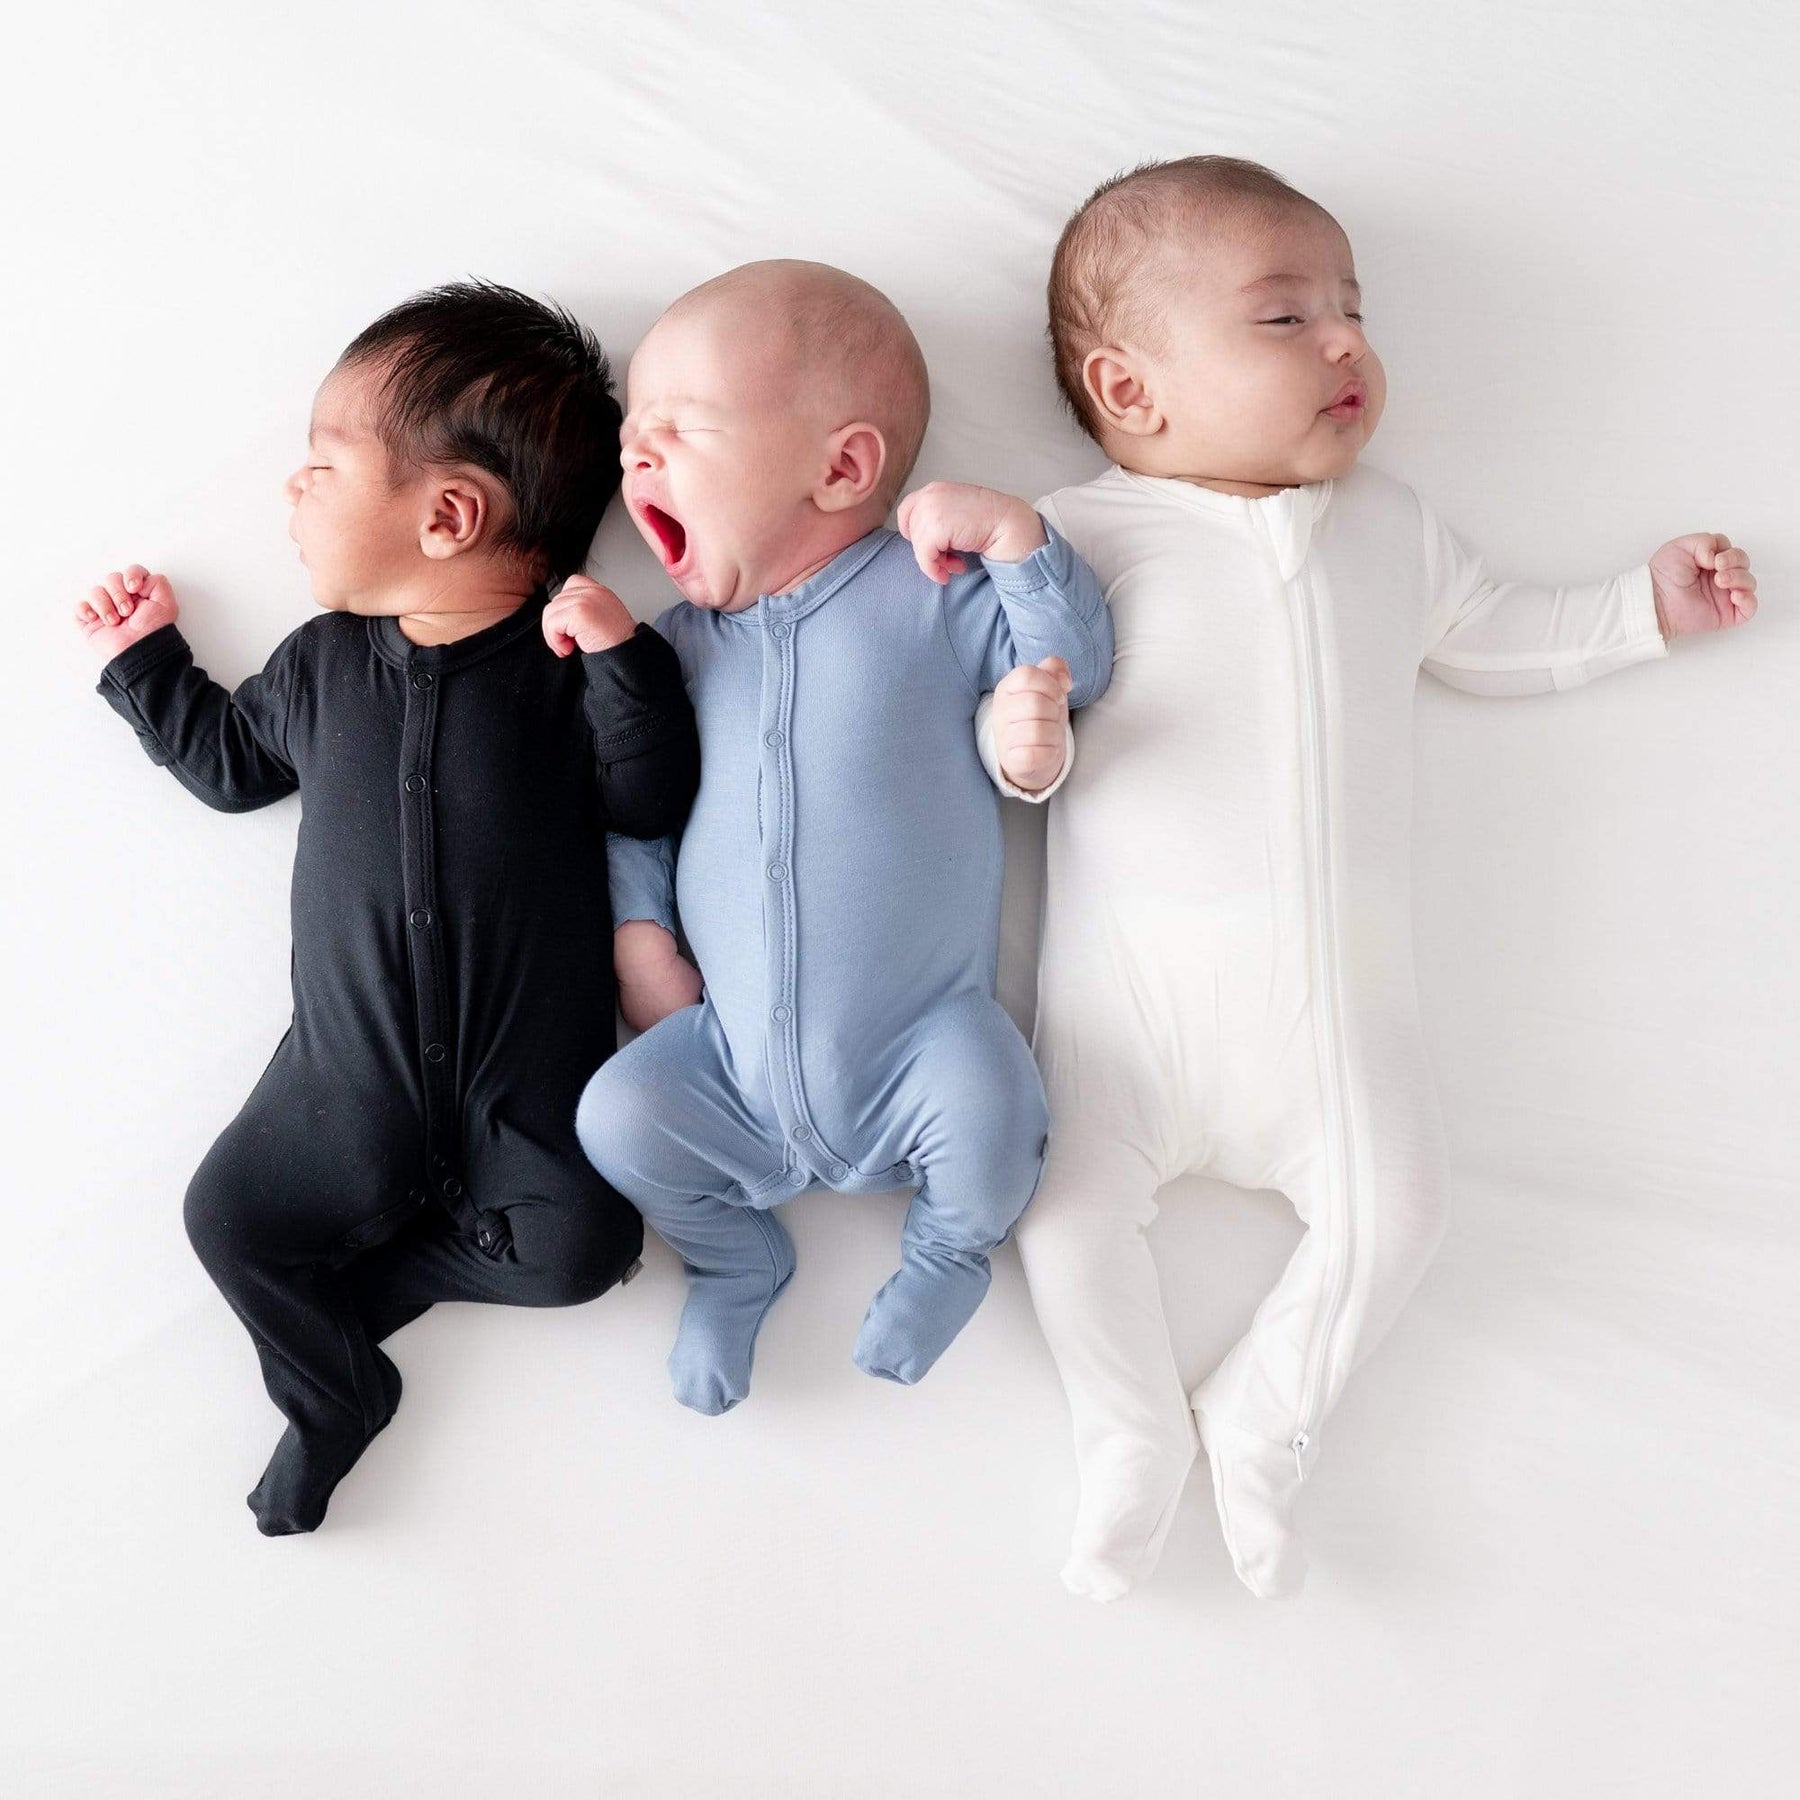 Babies wearing Kyte Baby footie pajamas in core colors